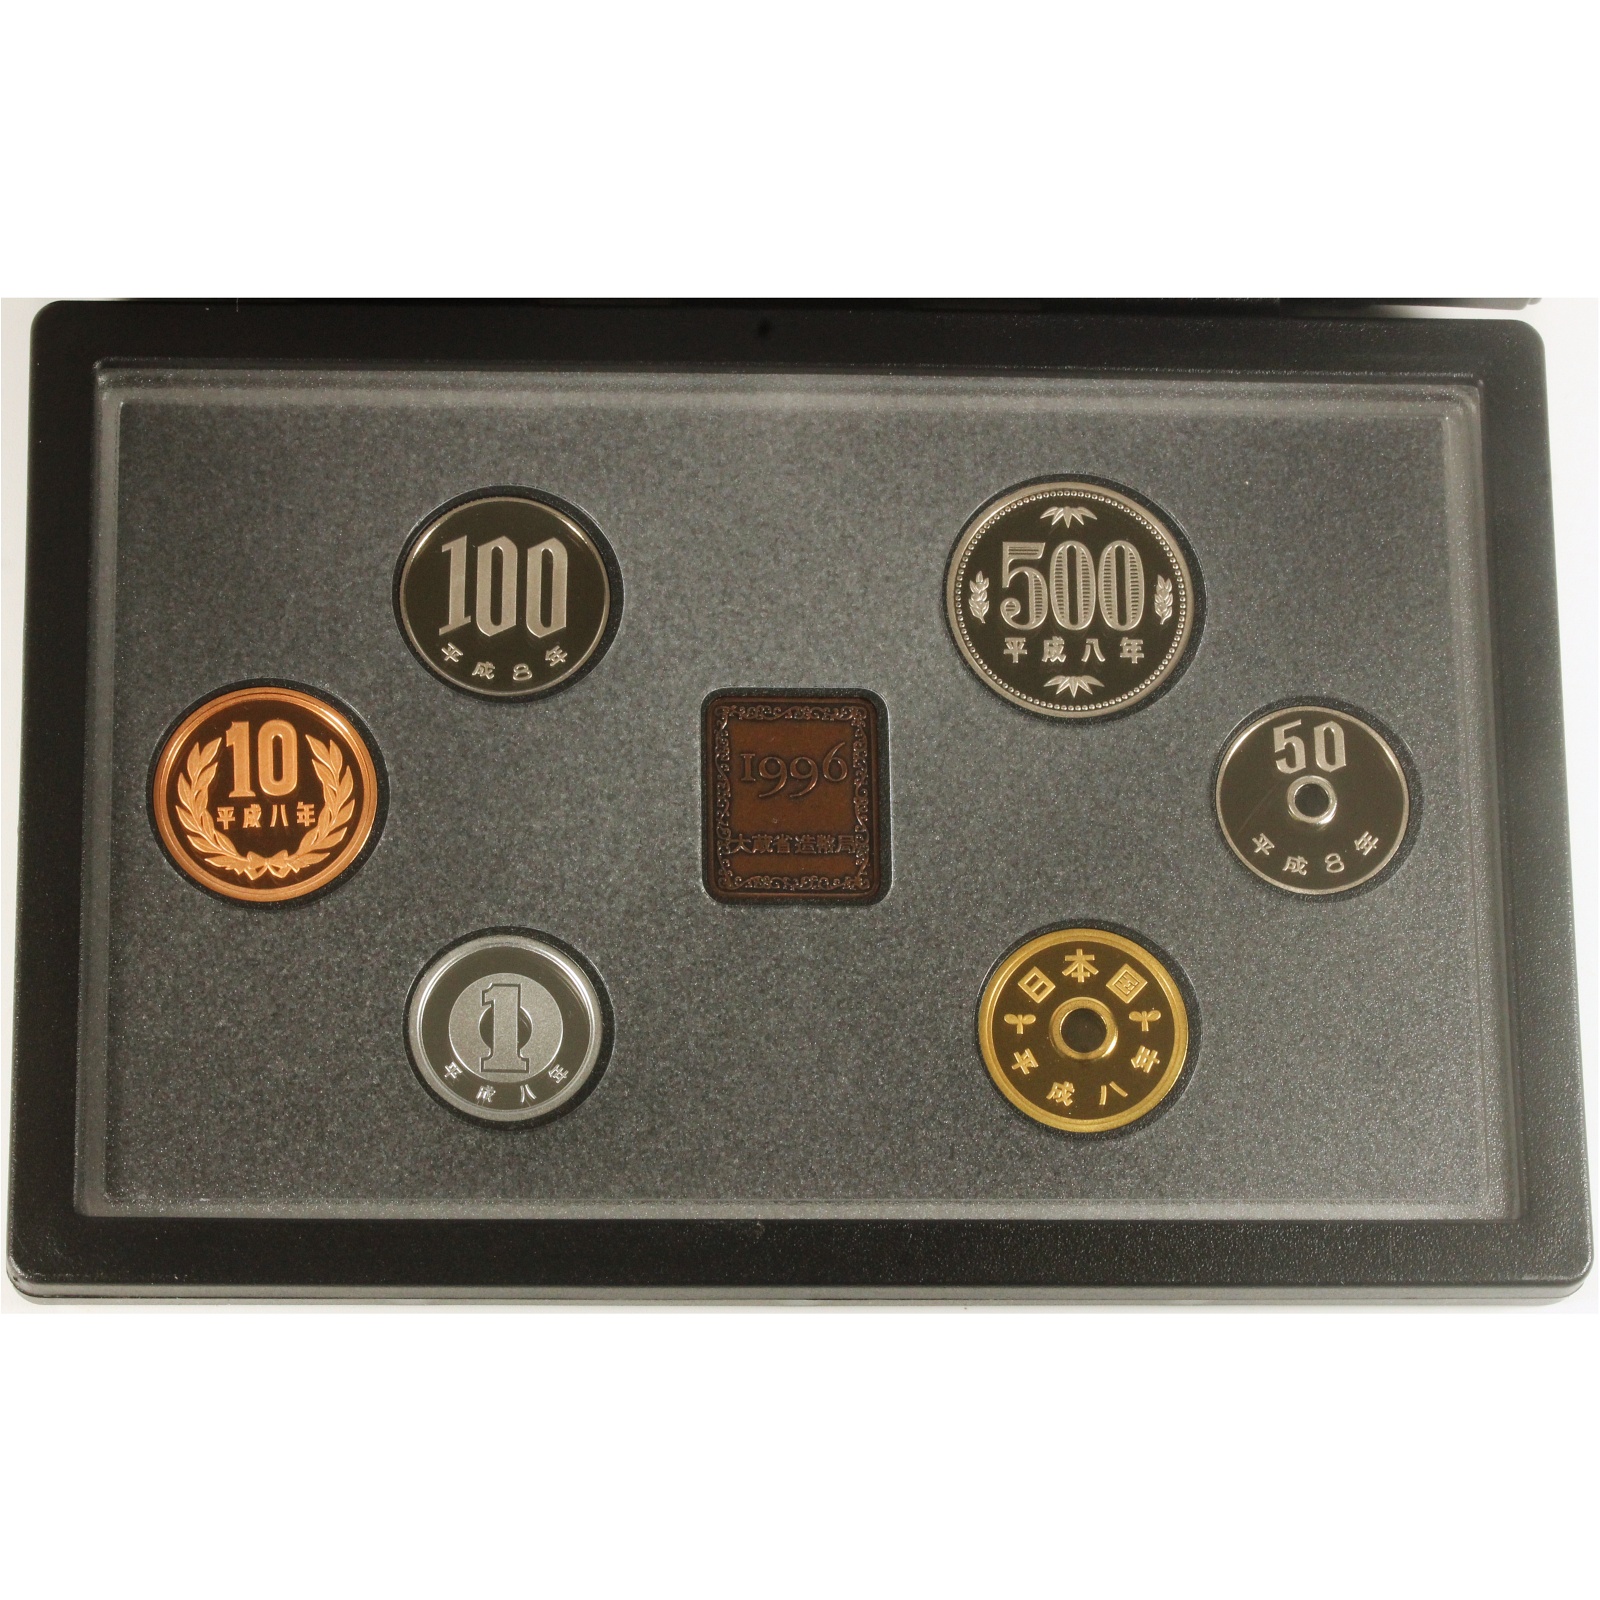 プルーフ貨幣セット 1996年 平成8年 年銘板あり ミントセット コインセット 造幣局 古銭 コイン | ミスターコインズ